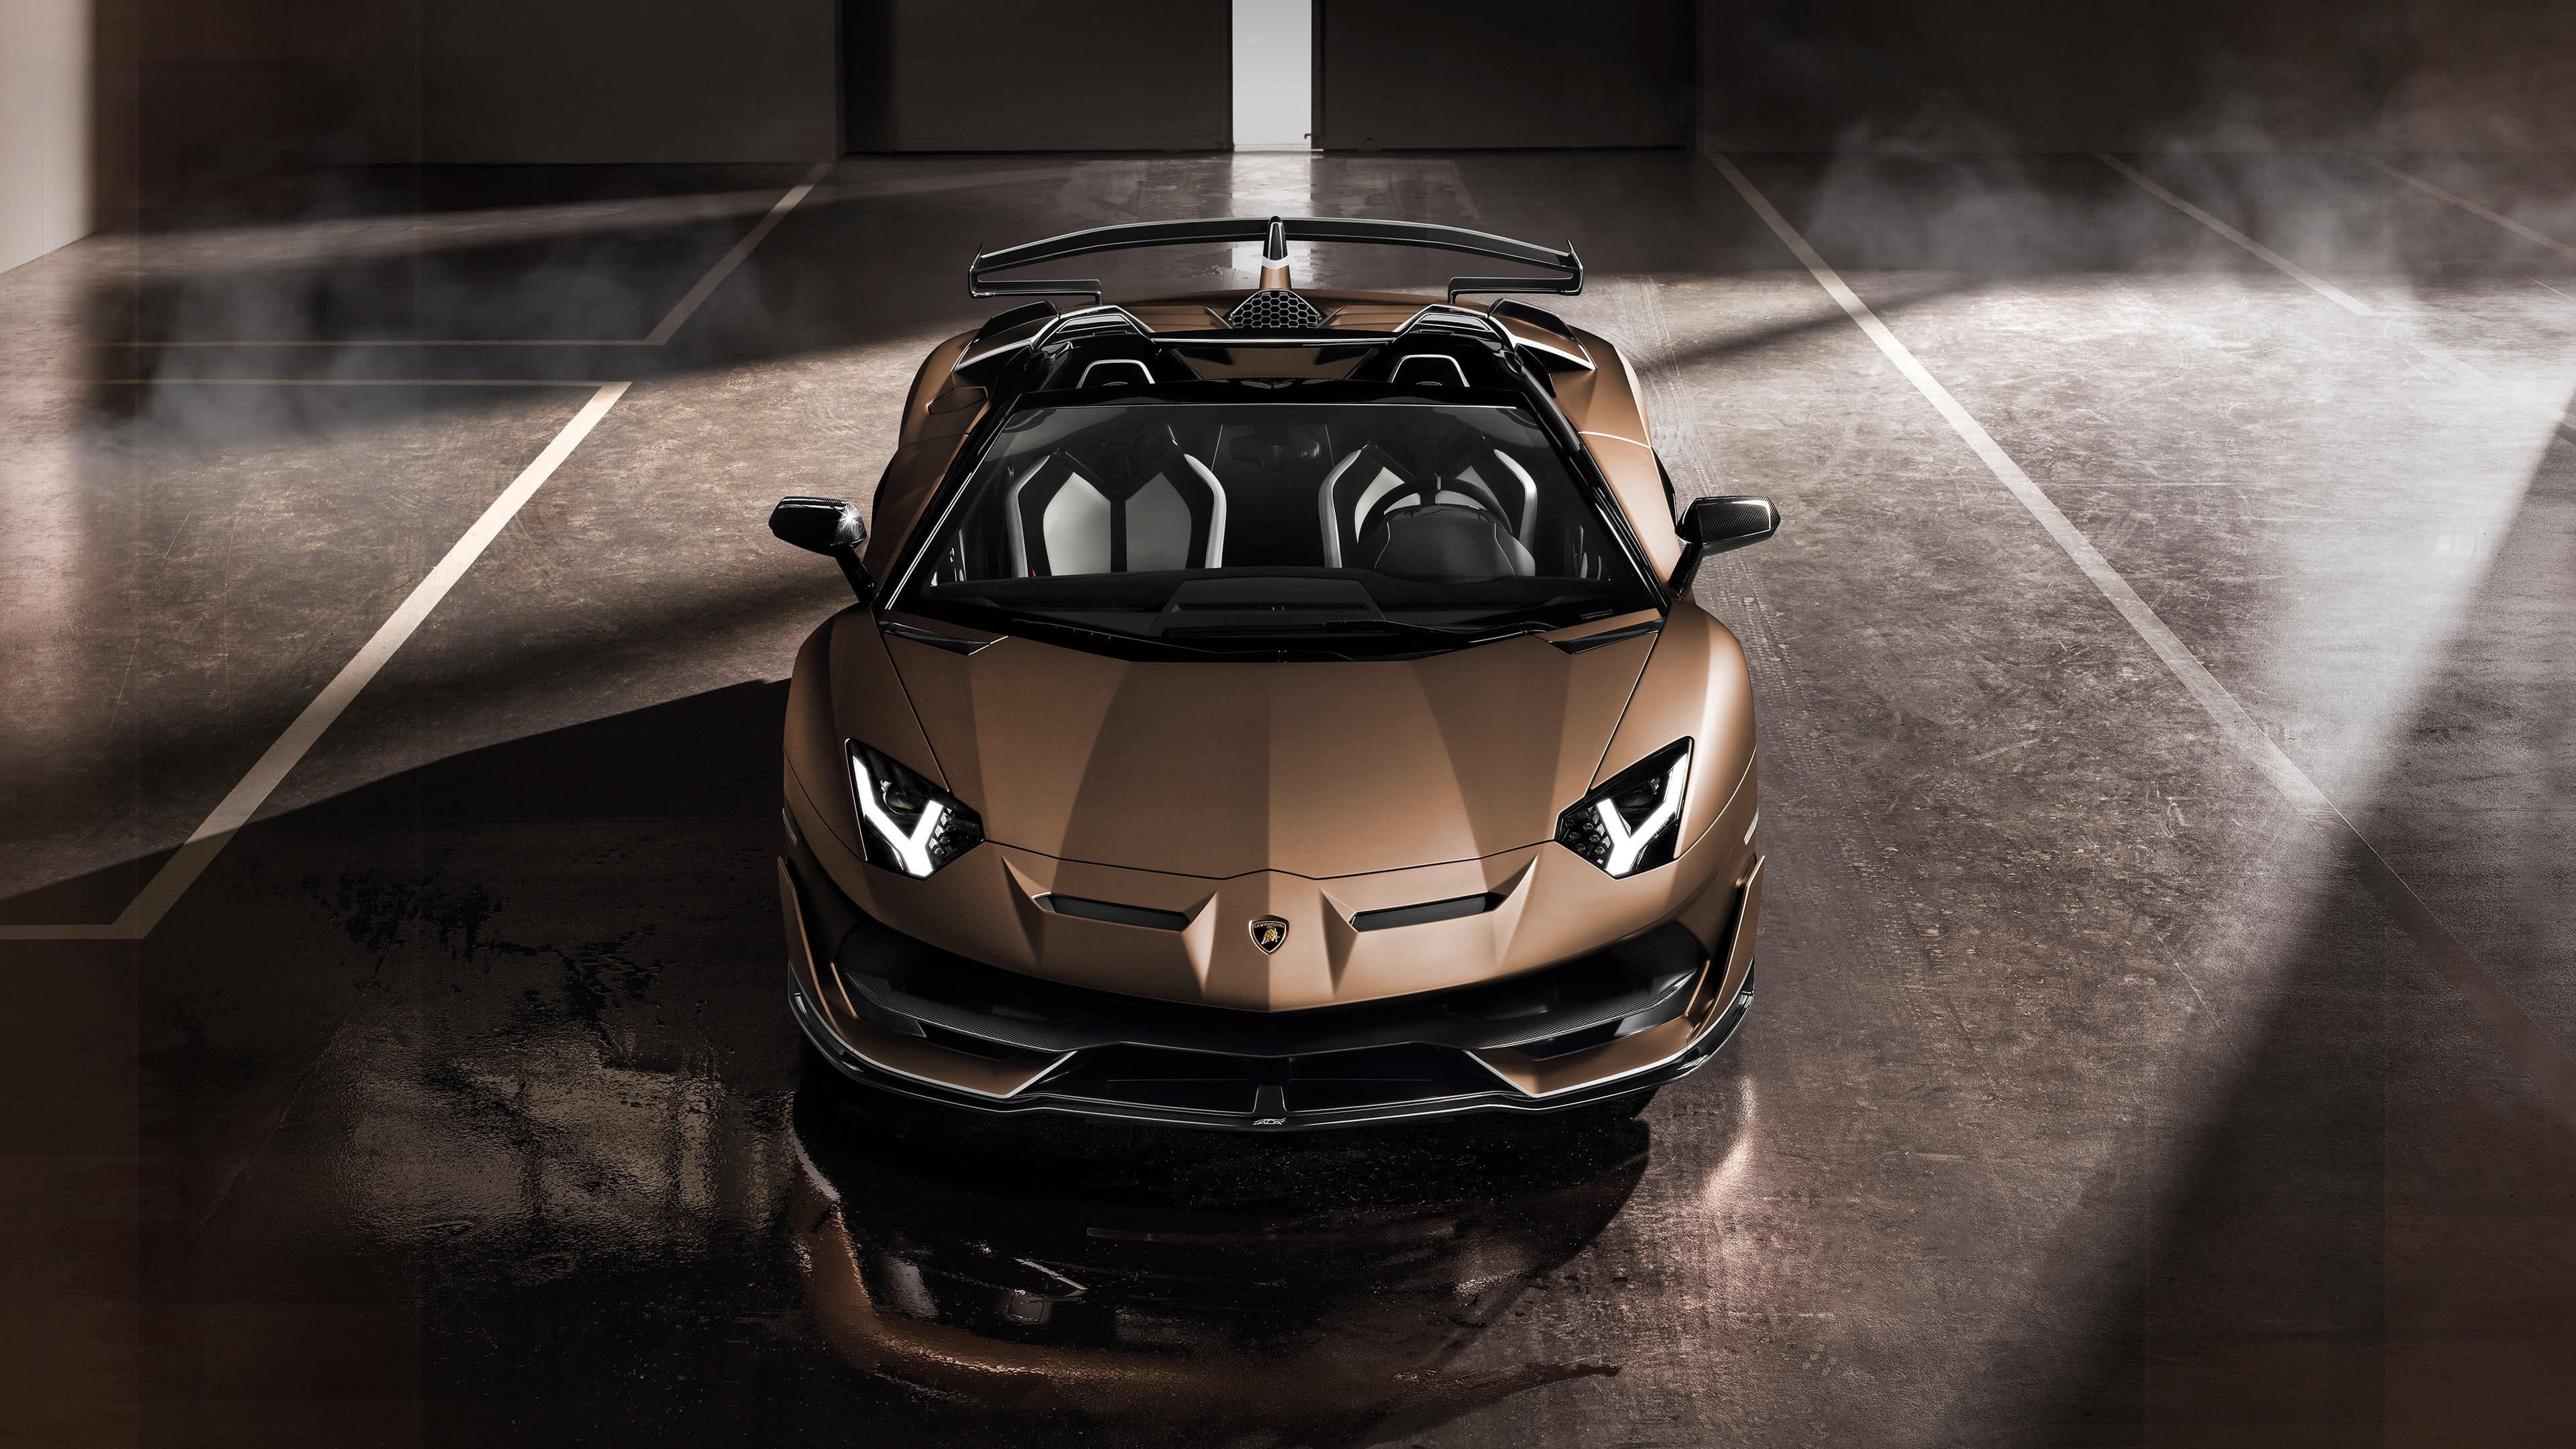 Lamborghini Aventador SVJ Roadster, Ultra HD 4K wallpaper, Impressive design, 3840x2160 4K Desktop